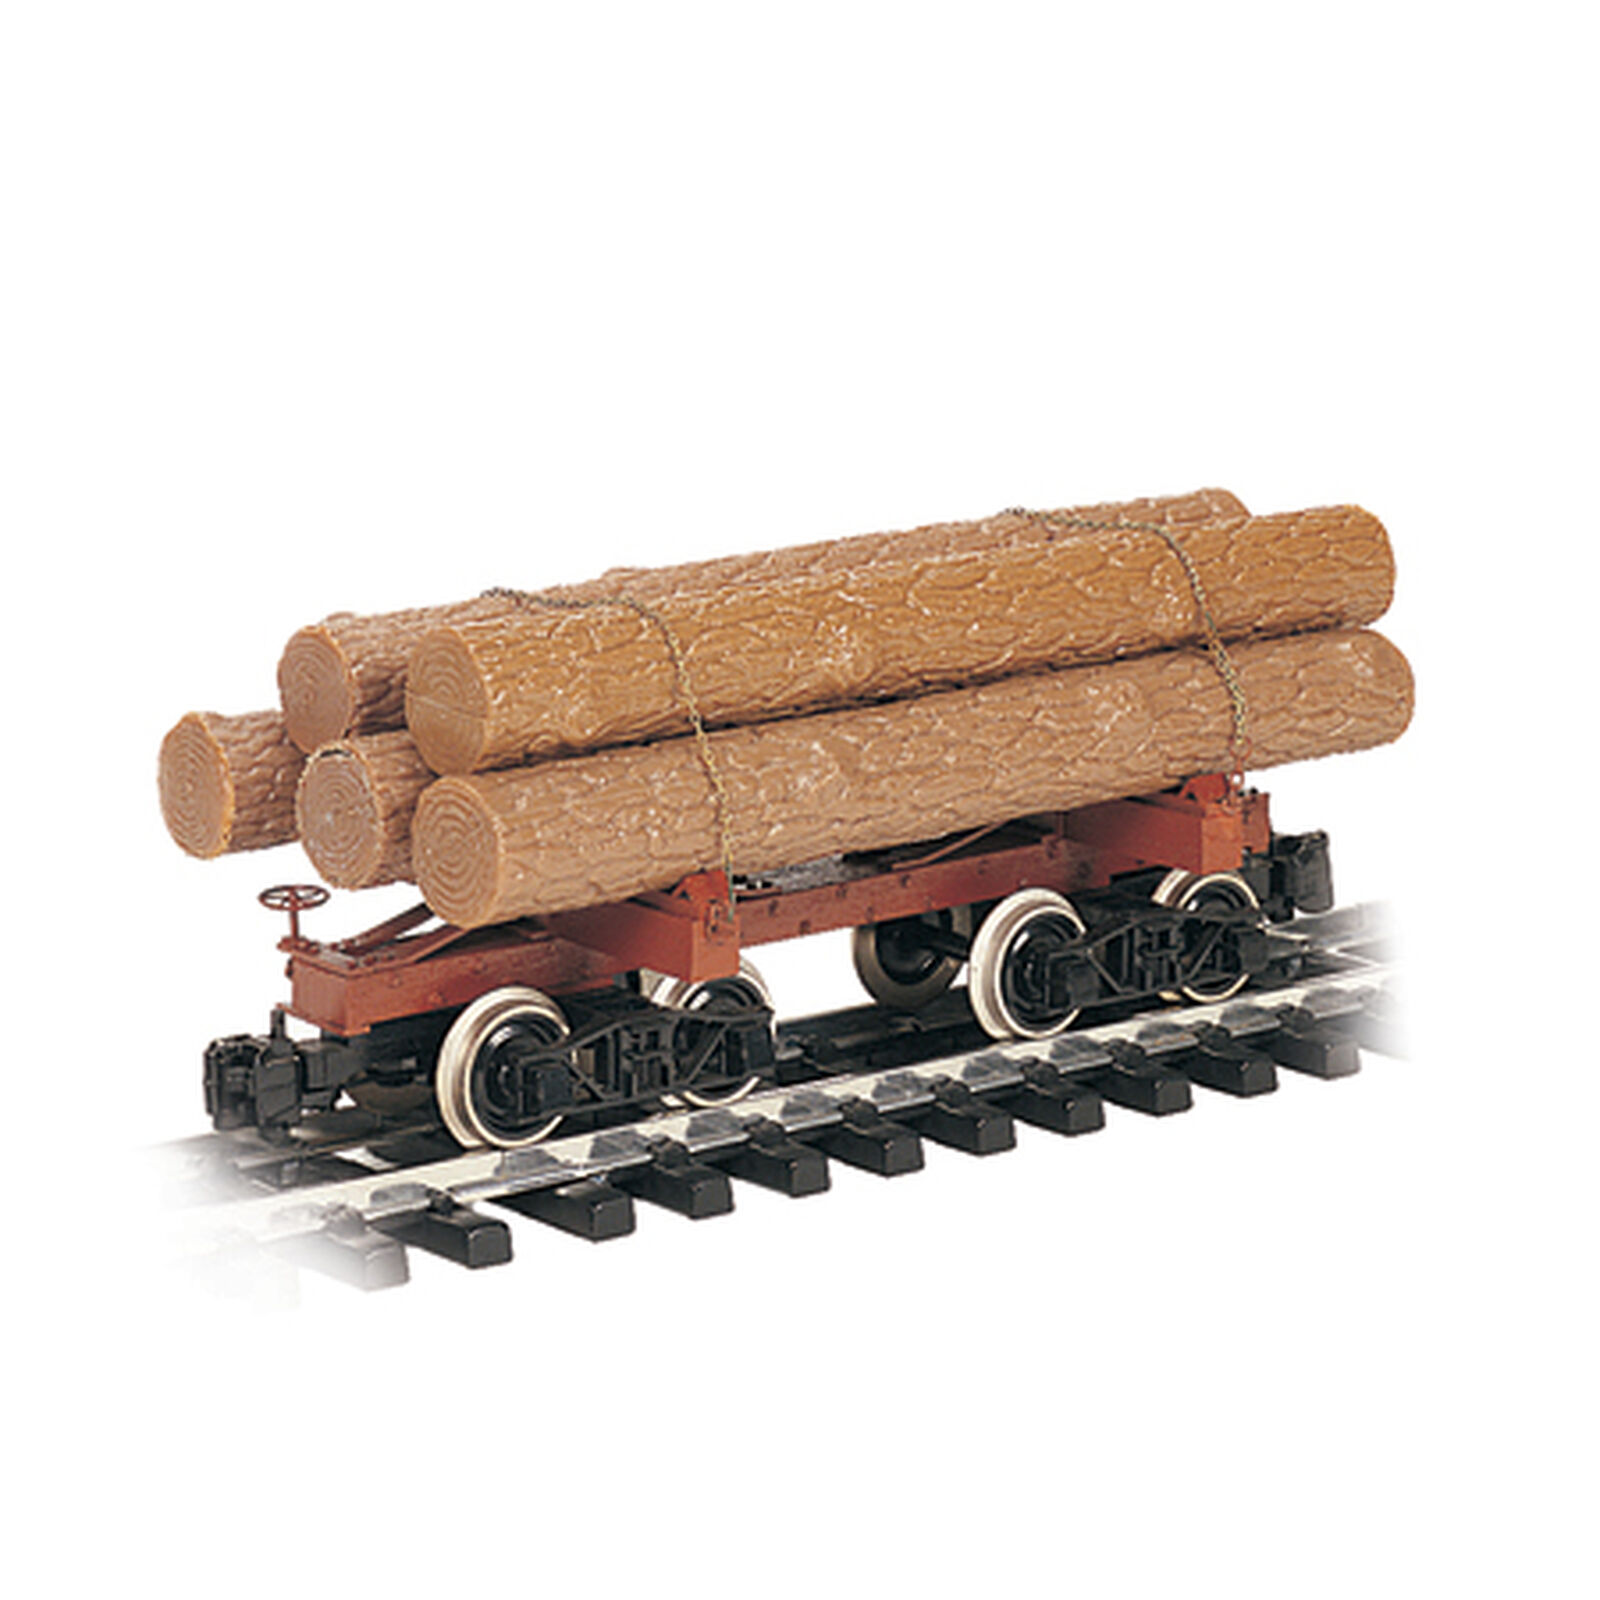 G Skeleton Log Car with Logs, Brown